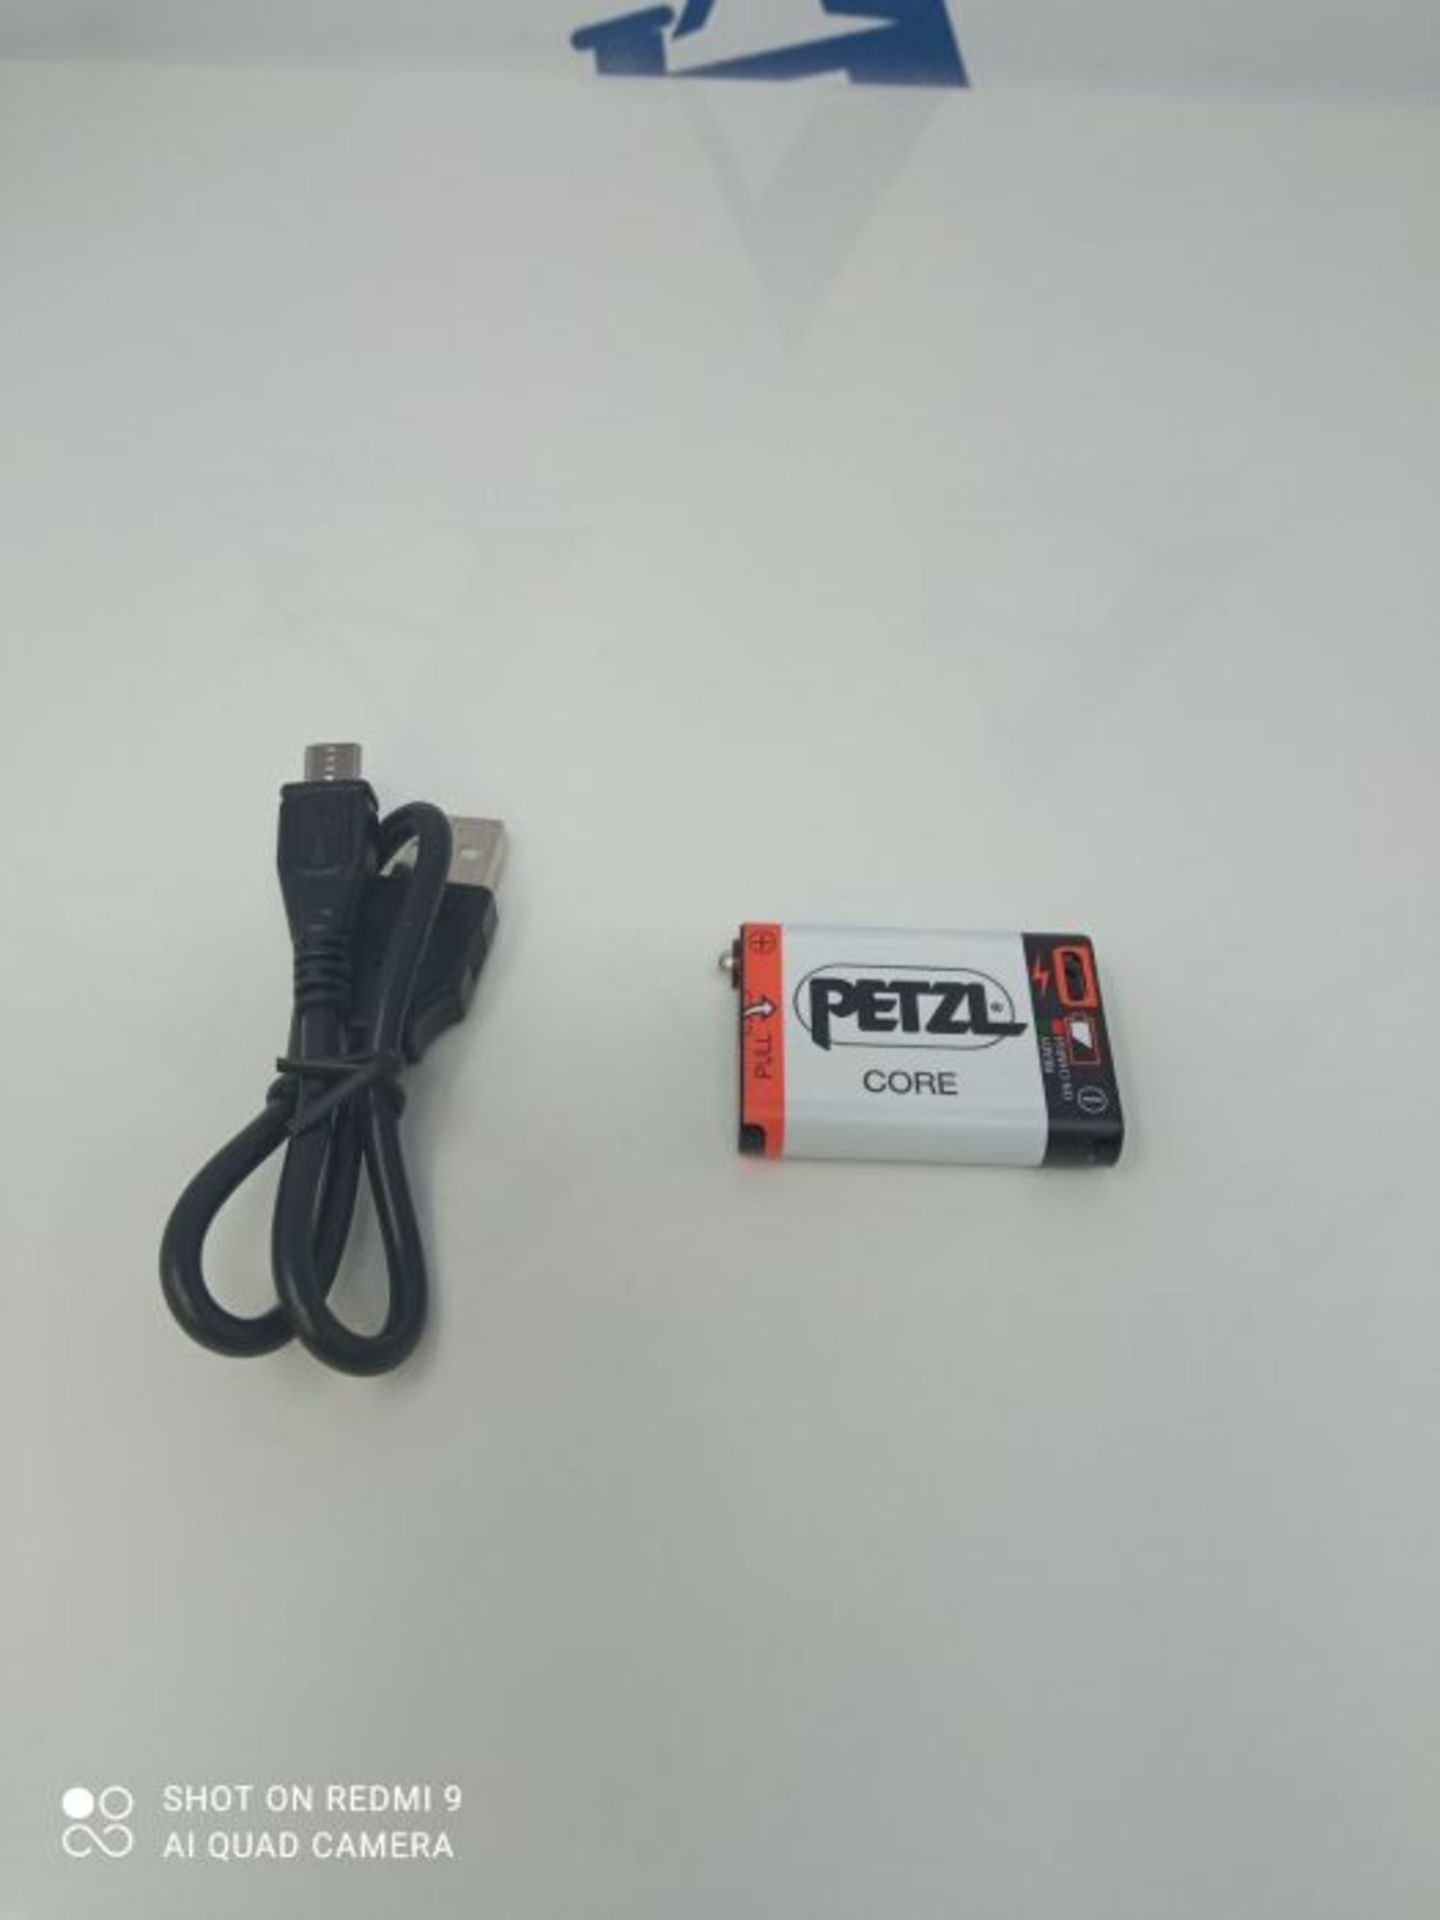 Petzl Core Batterie pour lampe frontale Mixte Adulte, Blanc, Taille Unique - Image 3 of 3